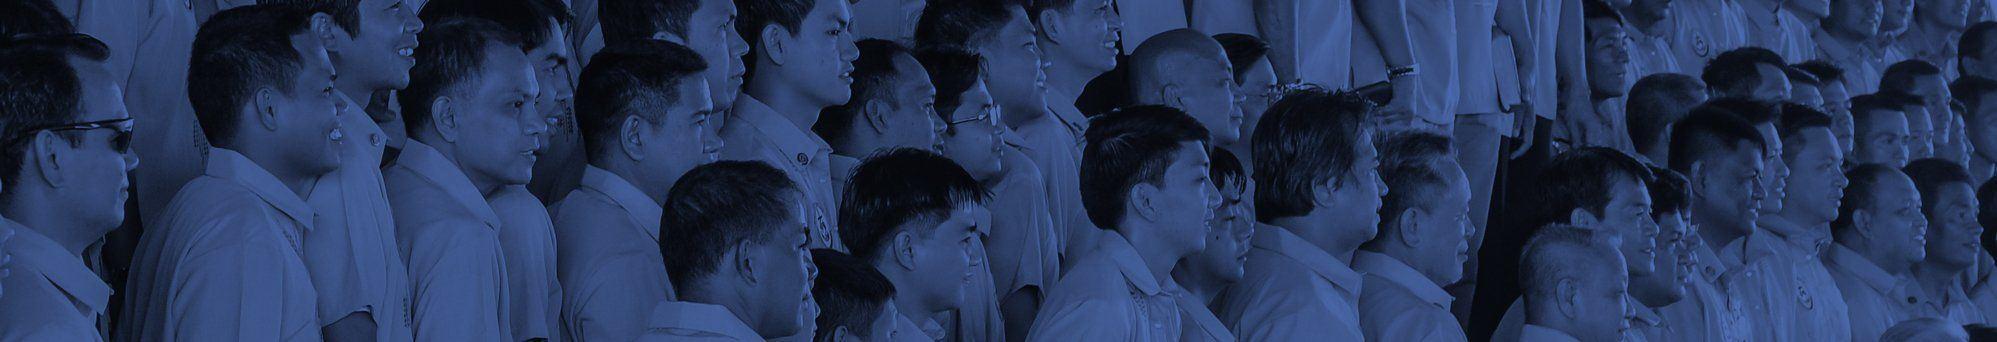 Indepndant baptist missionaries for asians